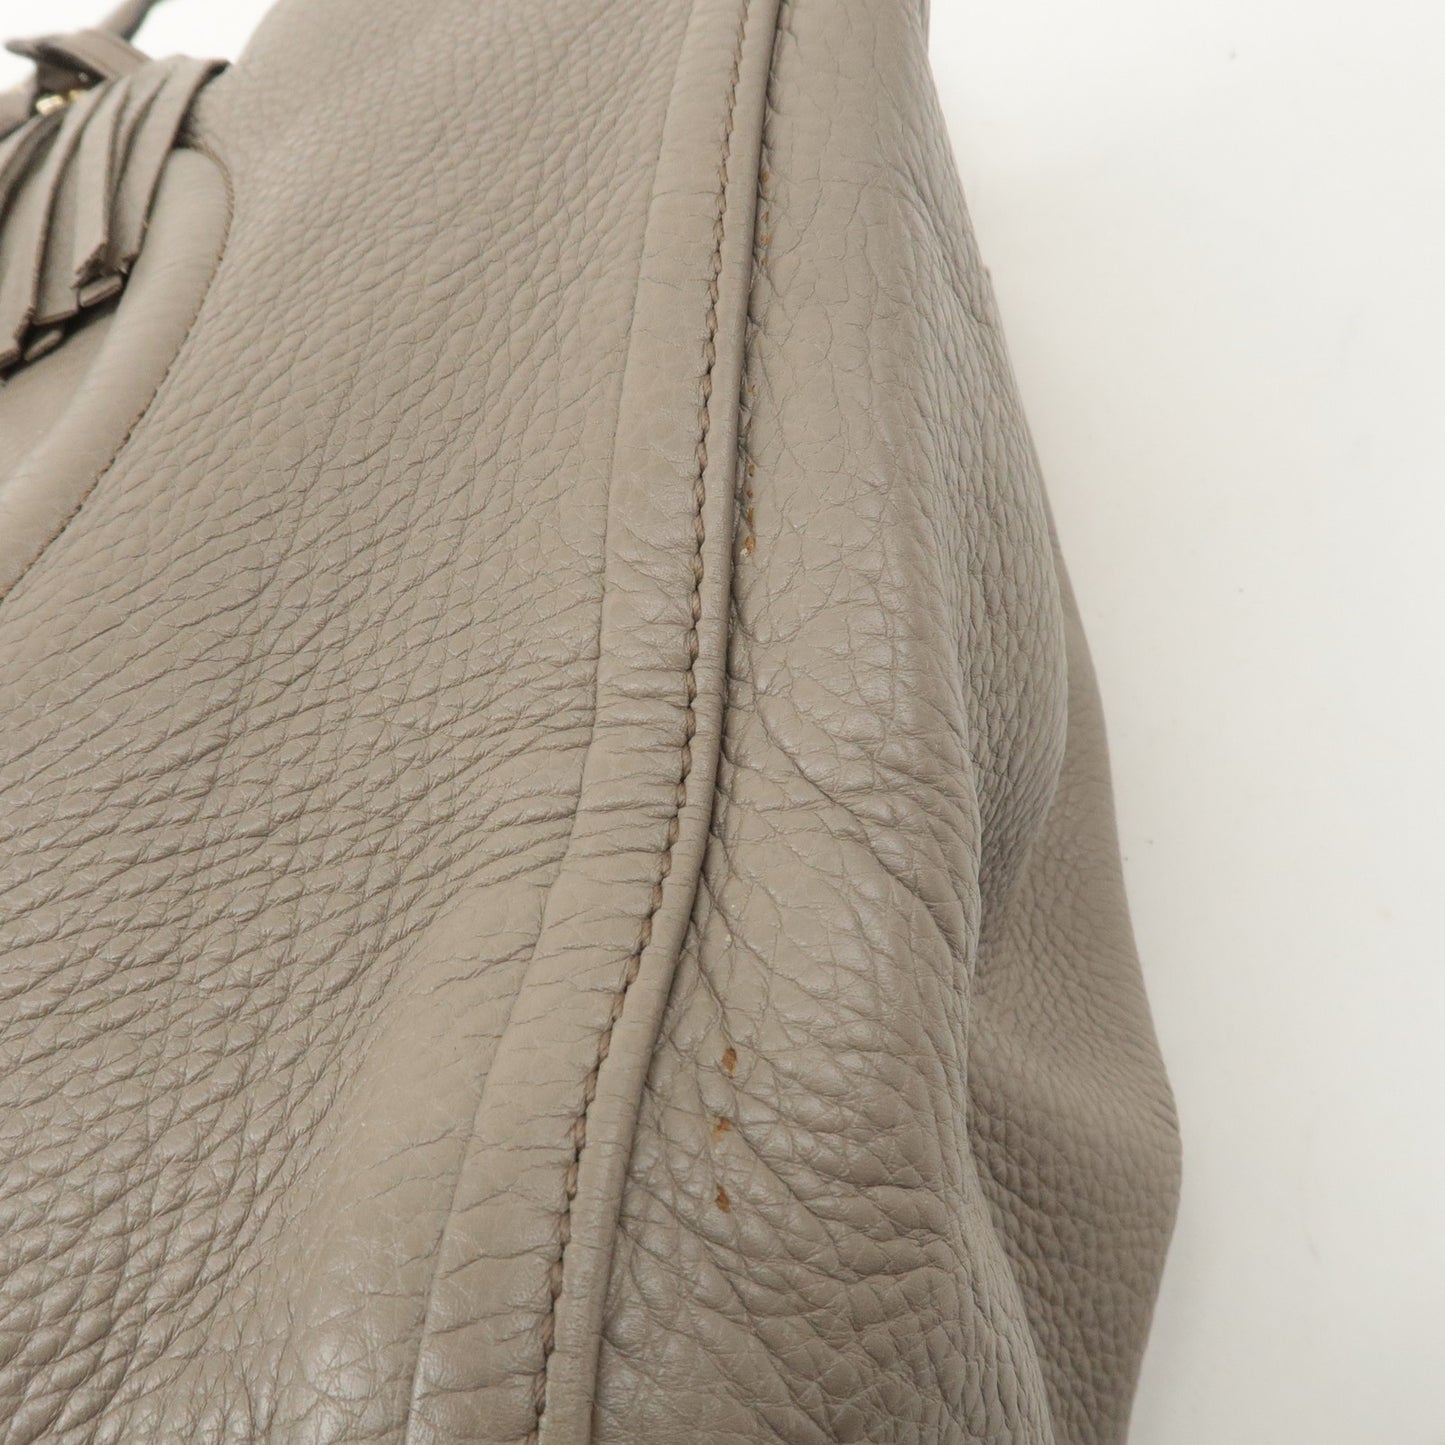 GUCCI SOHO Interlocking G Leather Shoulder Bag Graige 282309